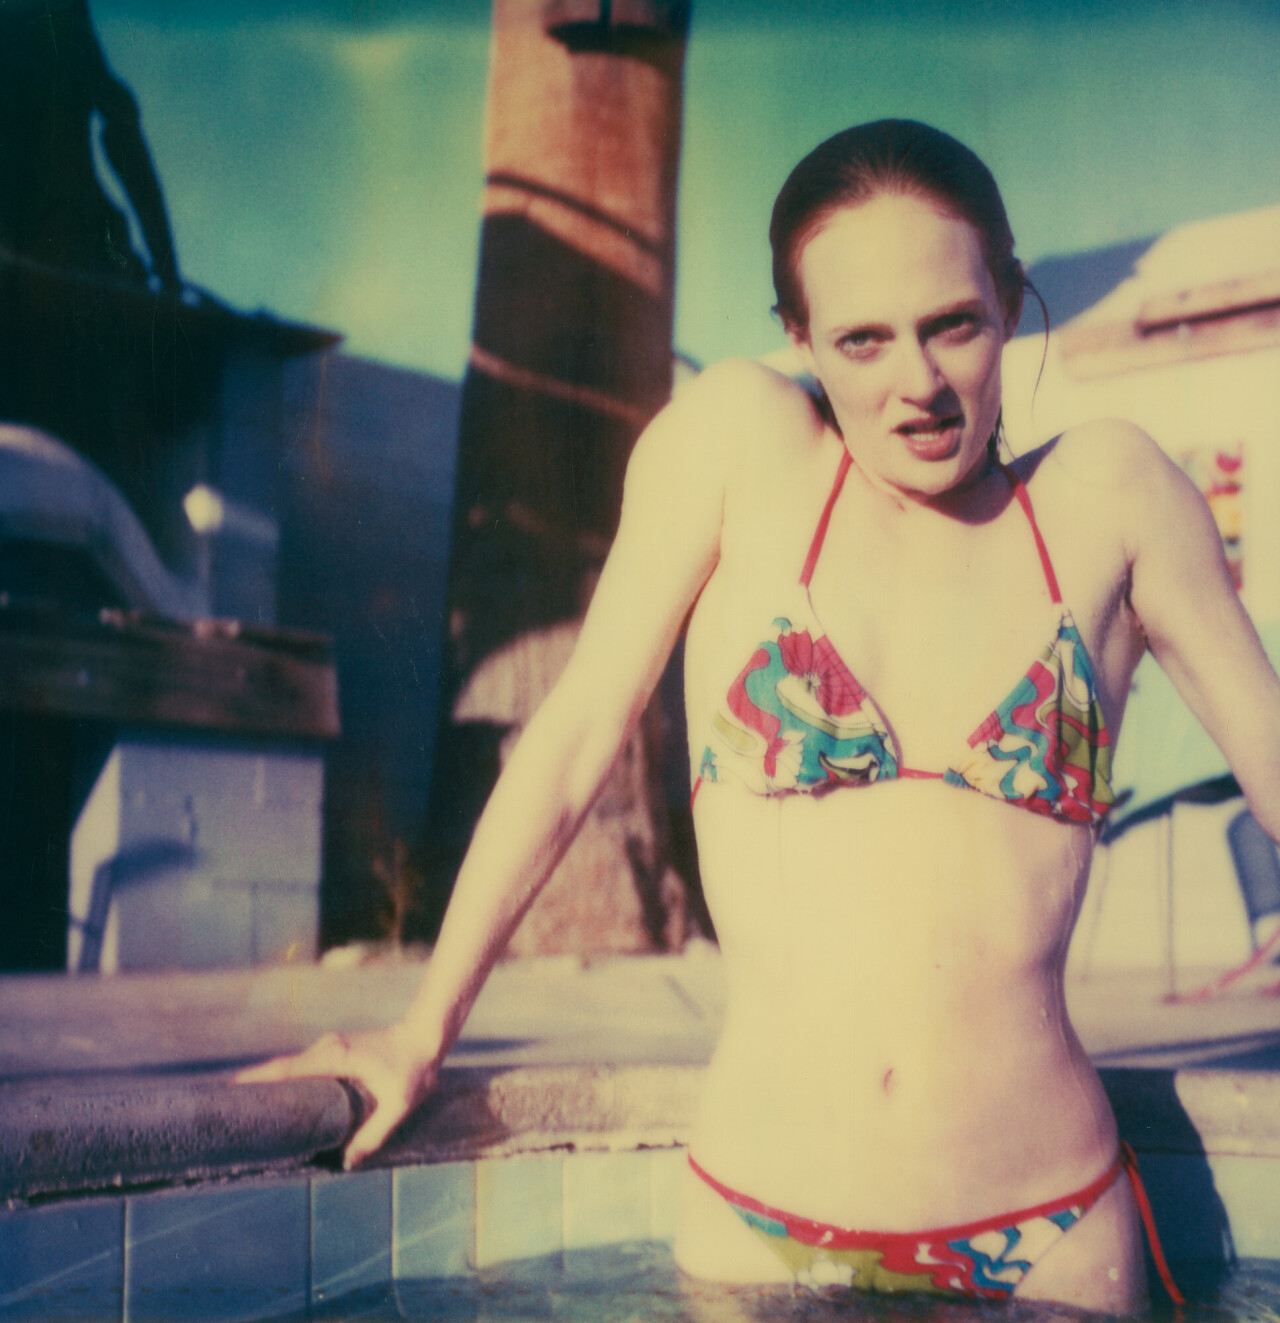 Дейзи в бассейне (Пока смерть не разлучит нас), 2005 г., полароид. Фотограф Стефани Шнайдер